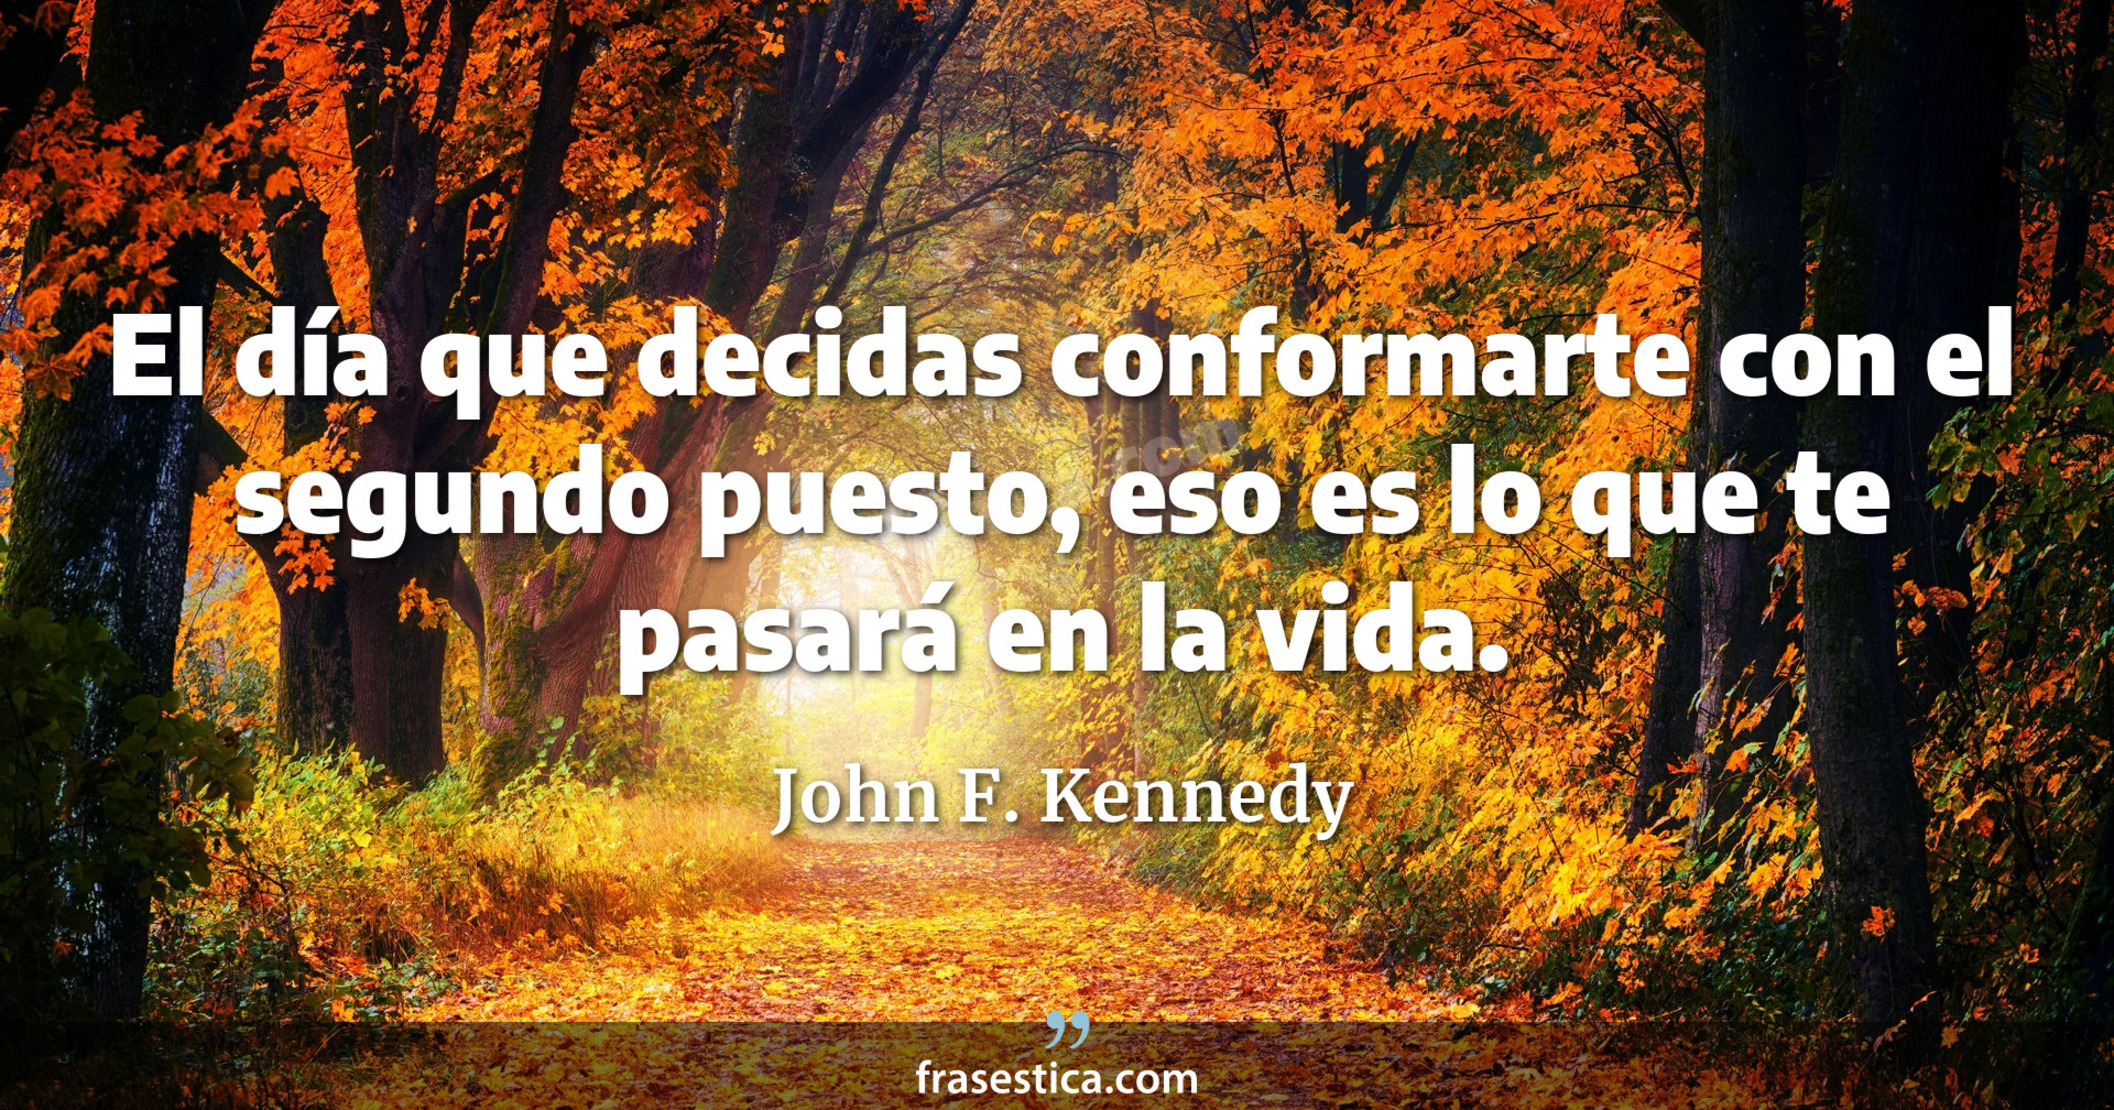 El día que decidas conformarte con el segundo puesto, eso es lo que te pasará en la vida. - John F. Kennedy